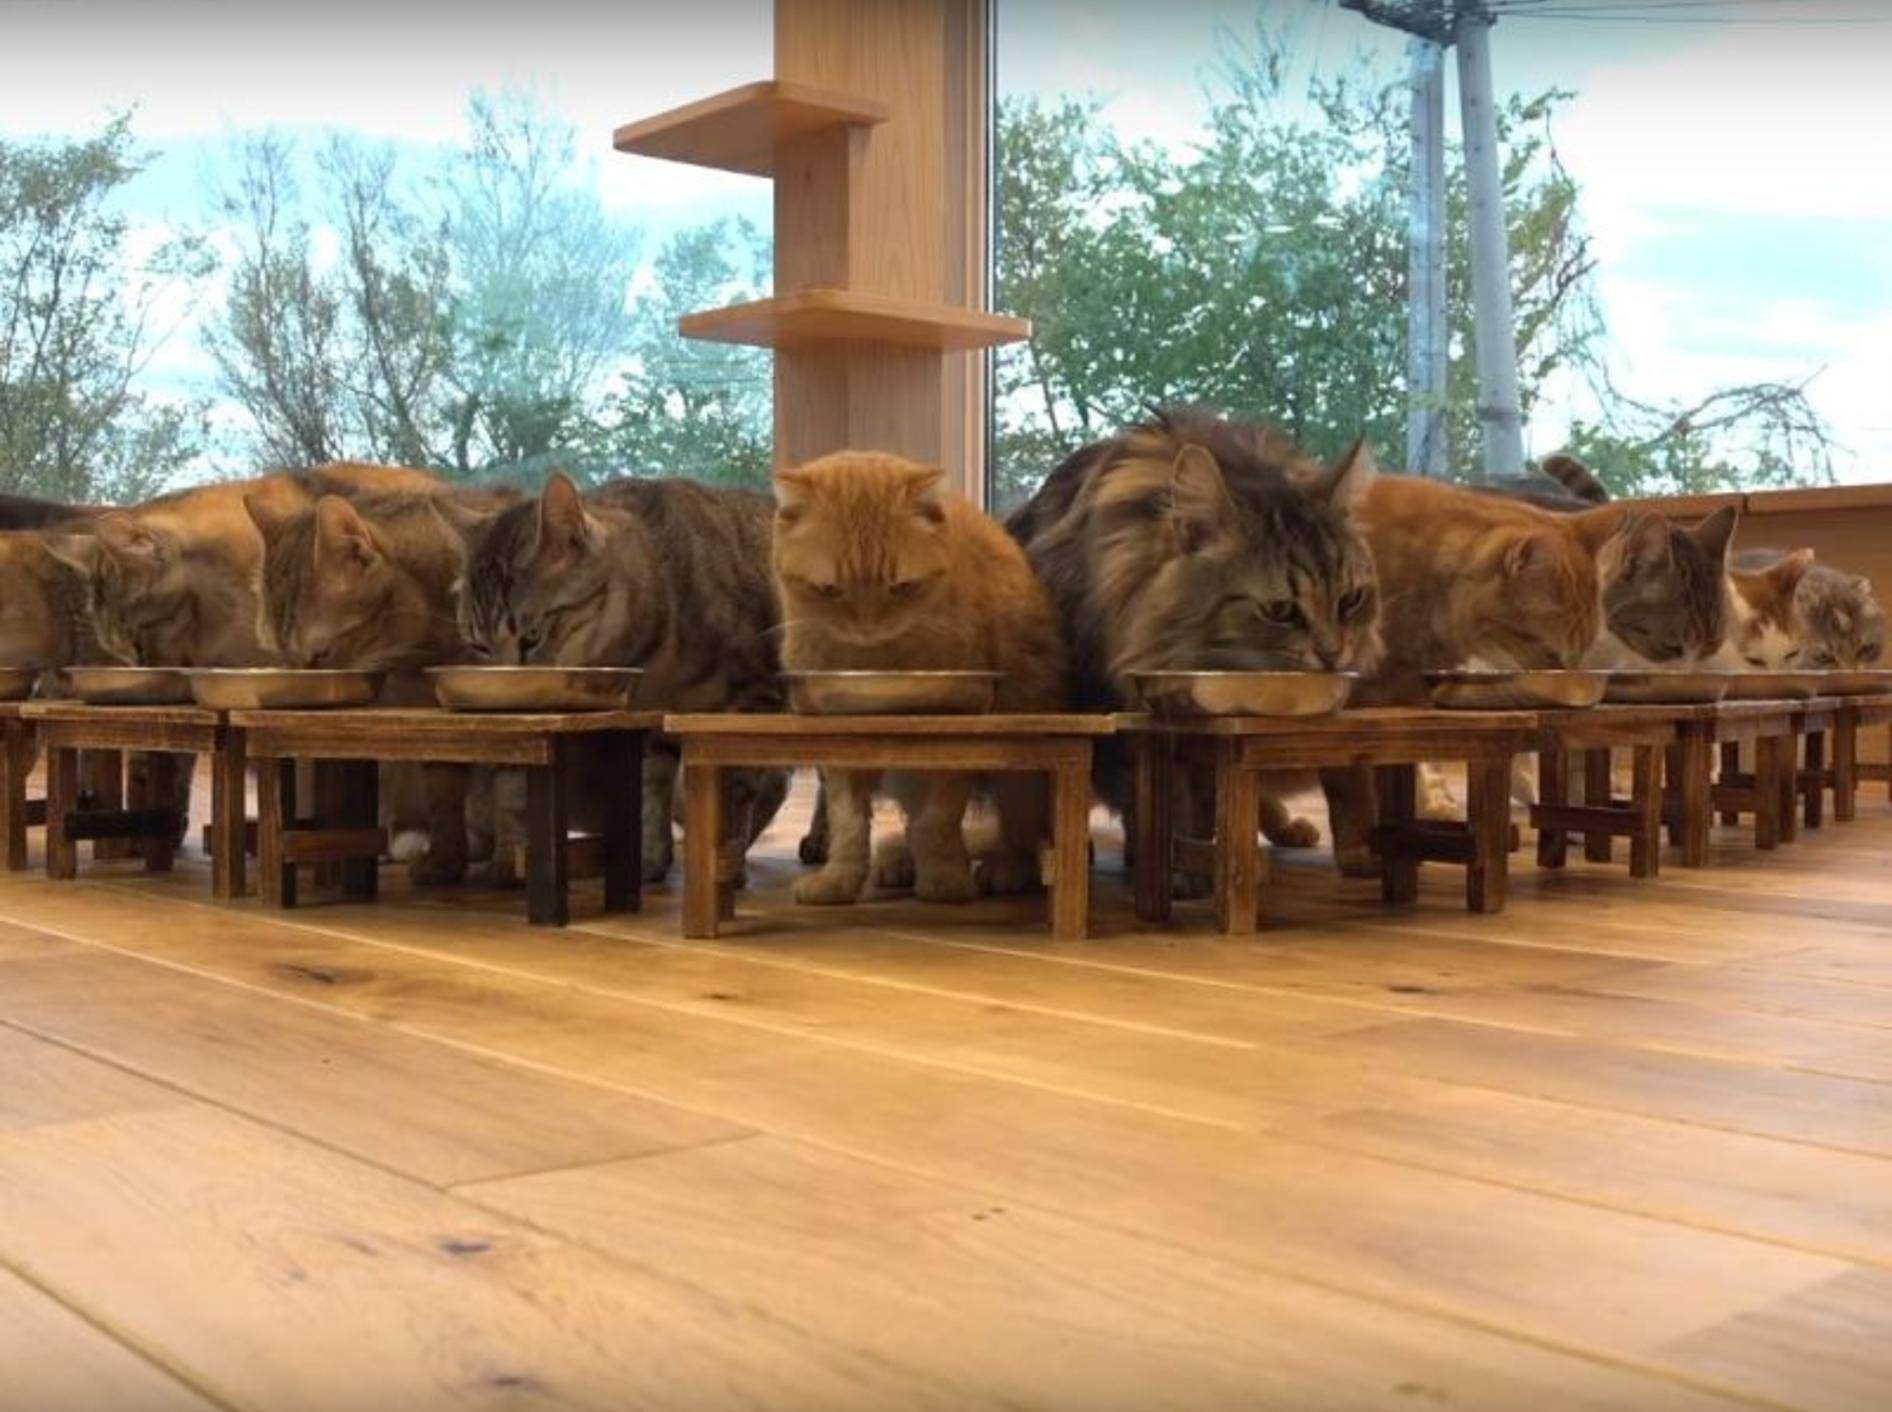 Vorstellungsrunde: So heißen die Bewohner der japanischen Katzen-WG – YouTube / 10 Cats.+